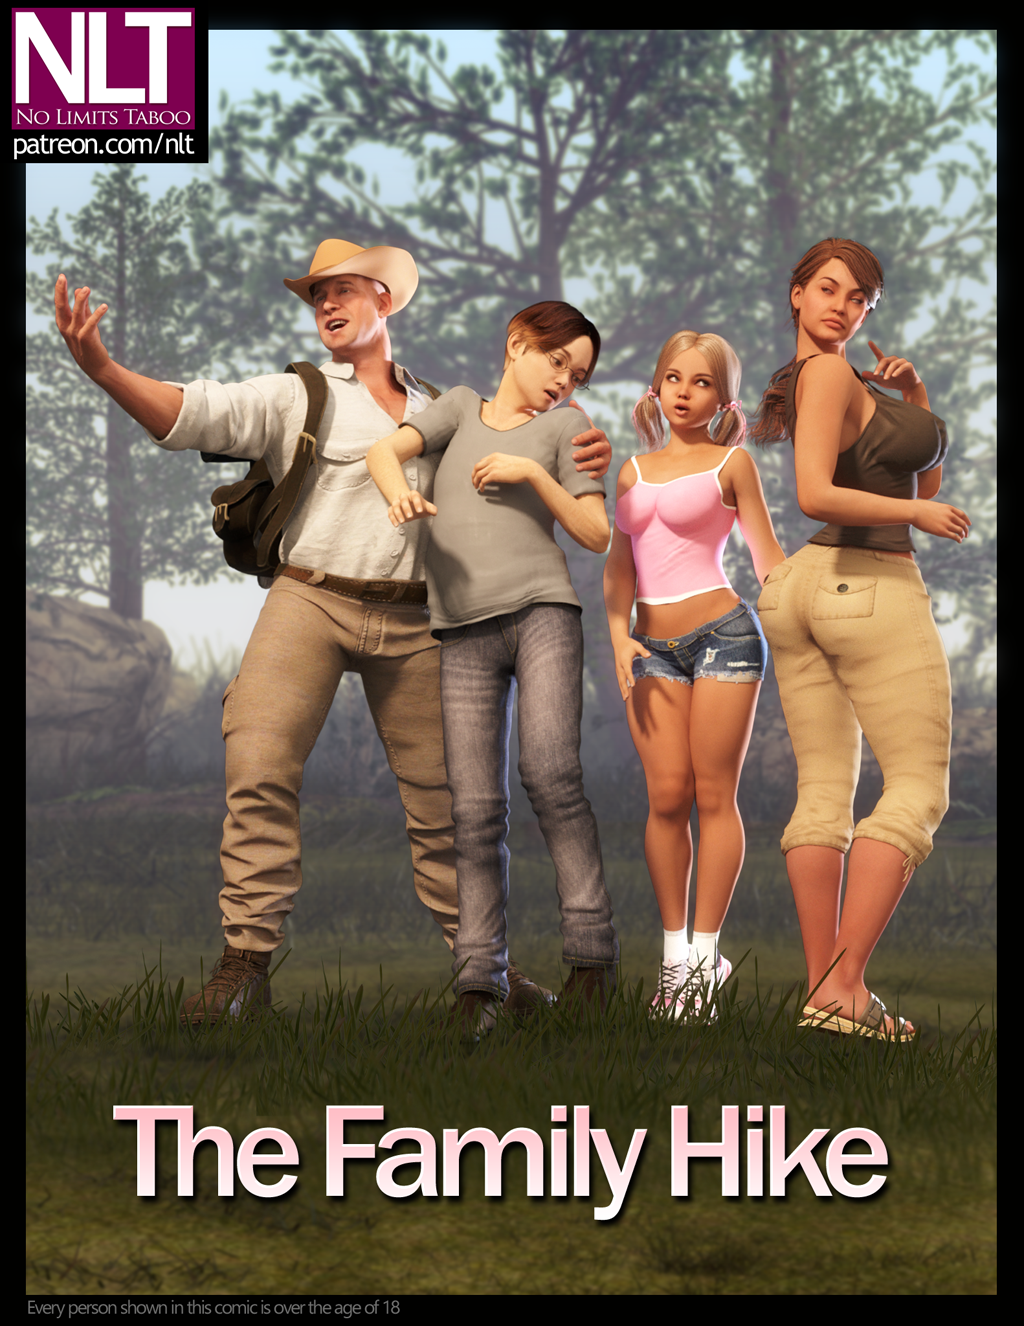 NLT Media – The Family Hike